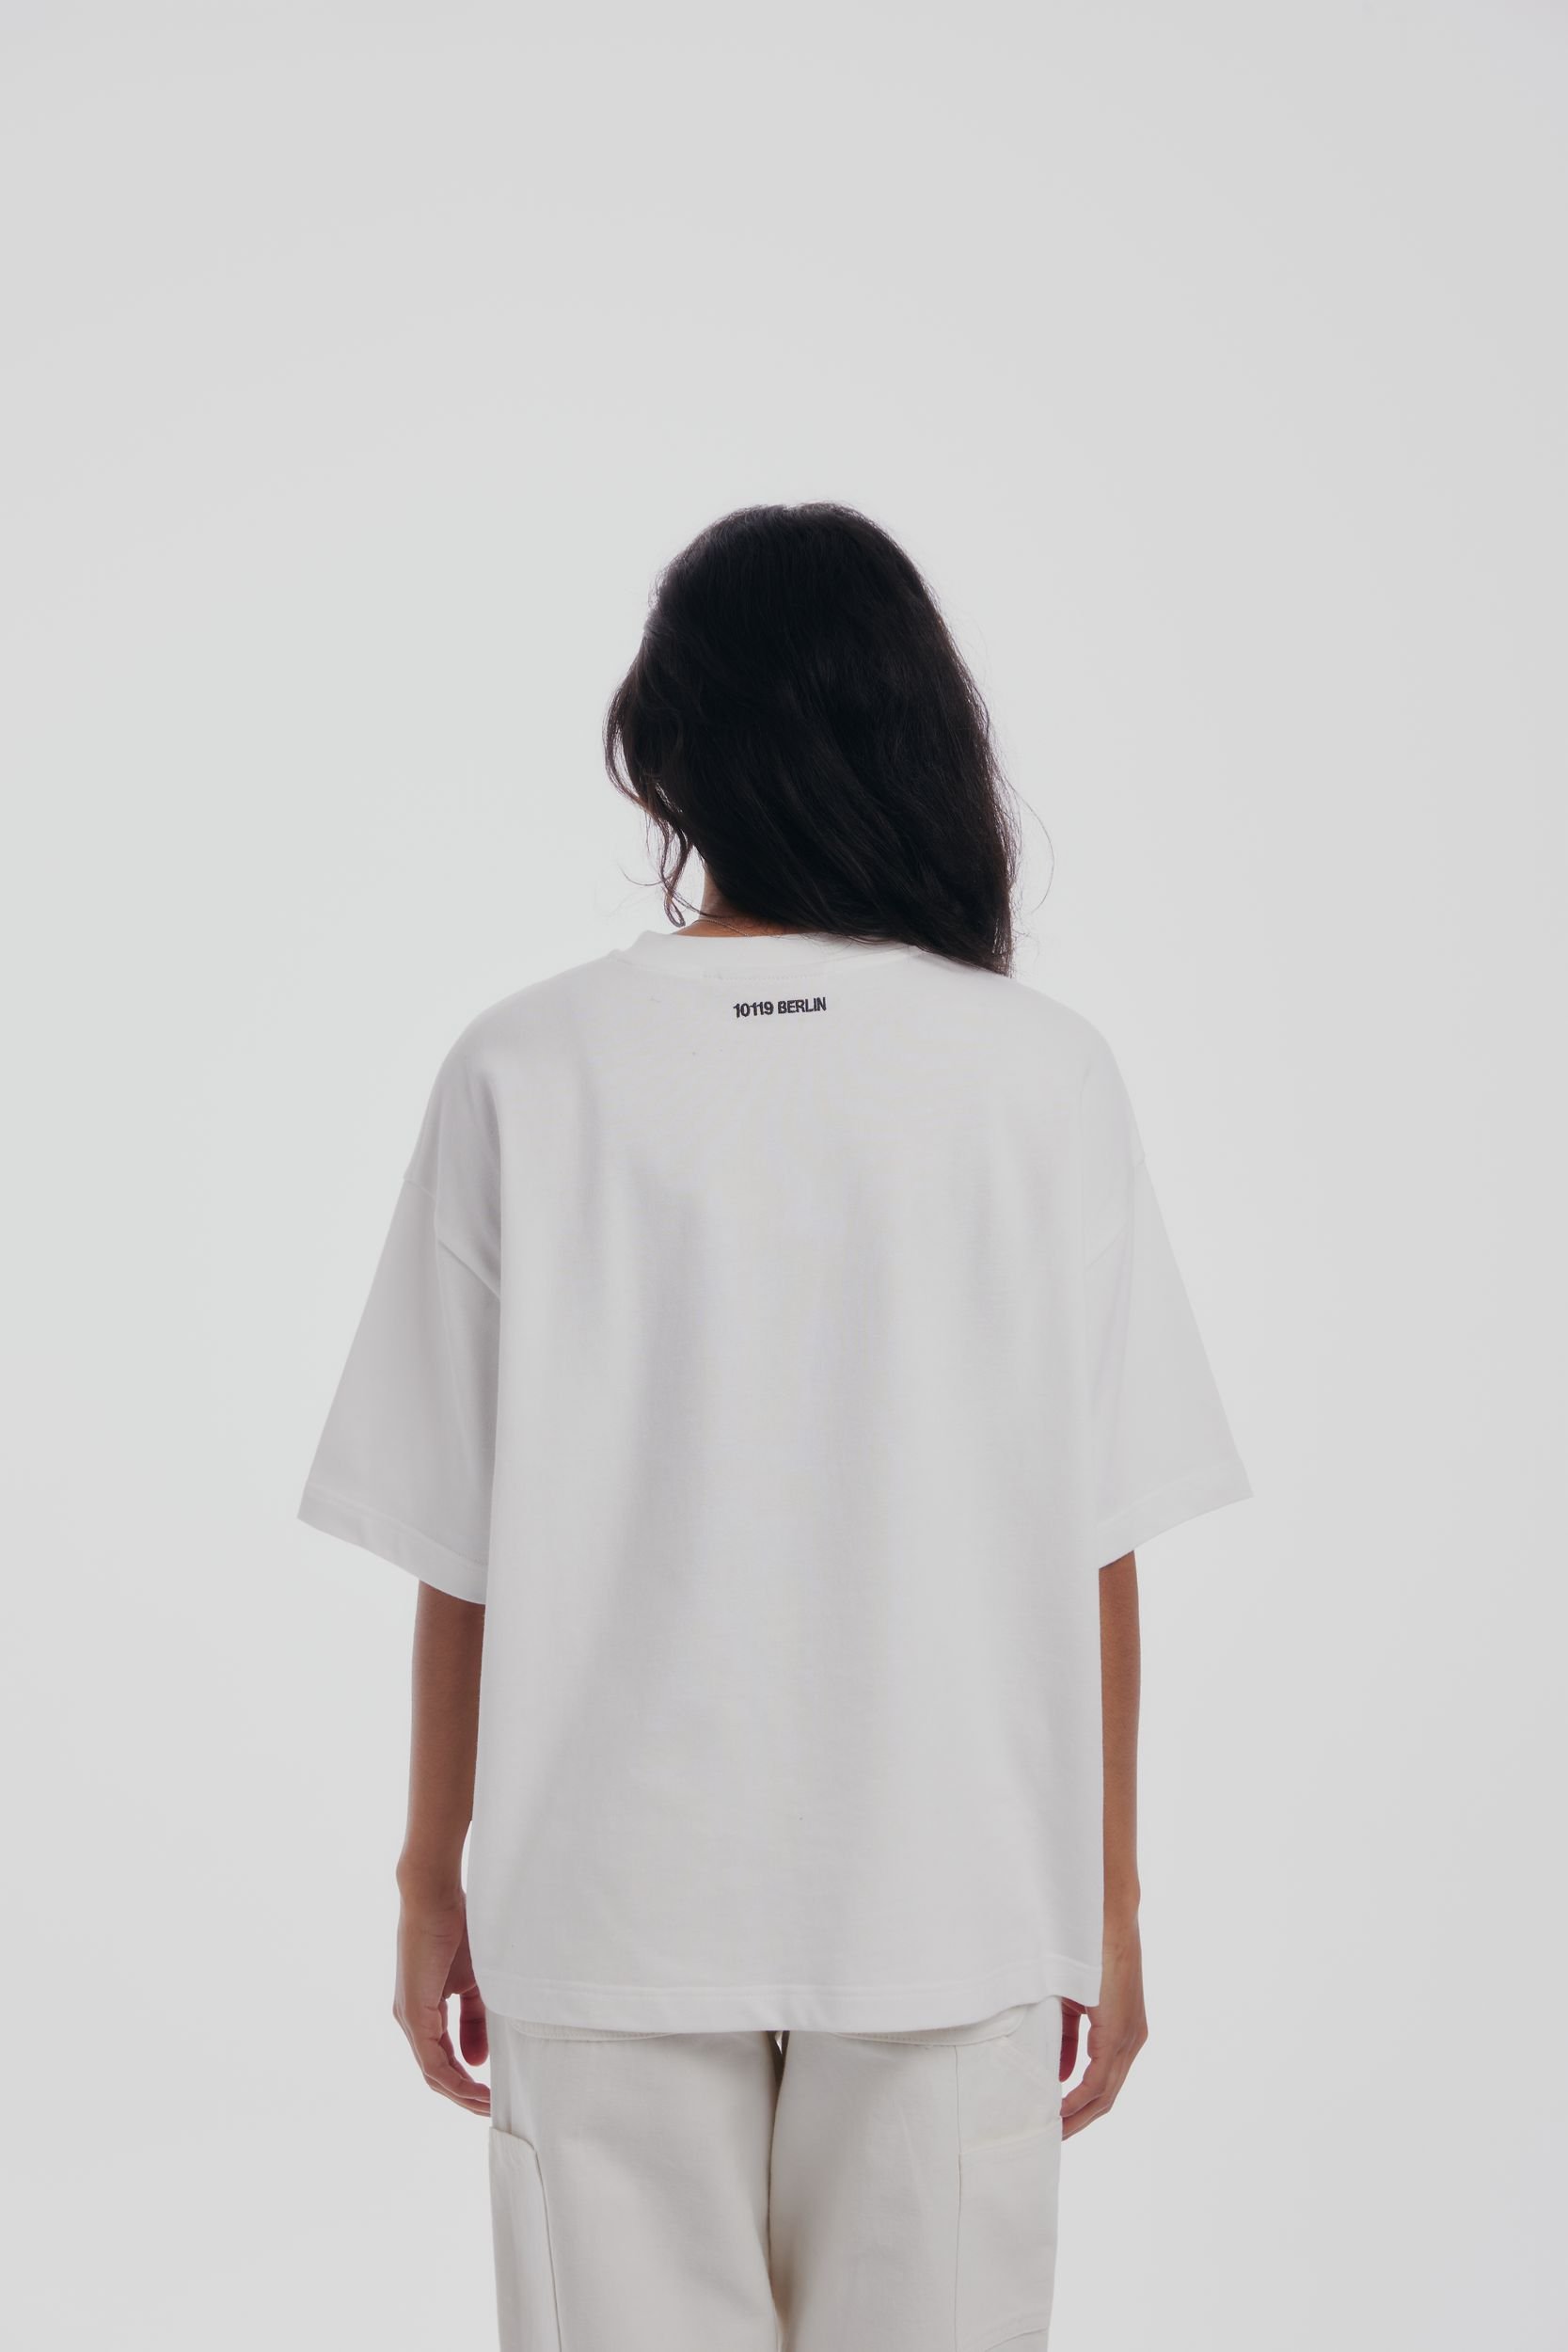  |  Prohibited Embroidery Unisex Oversized Shirt | L | white/black